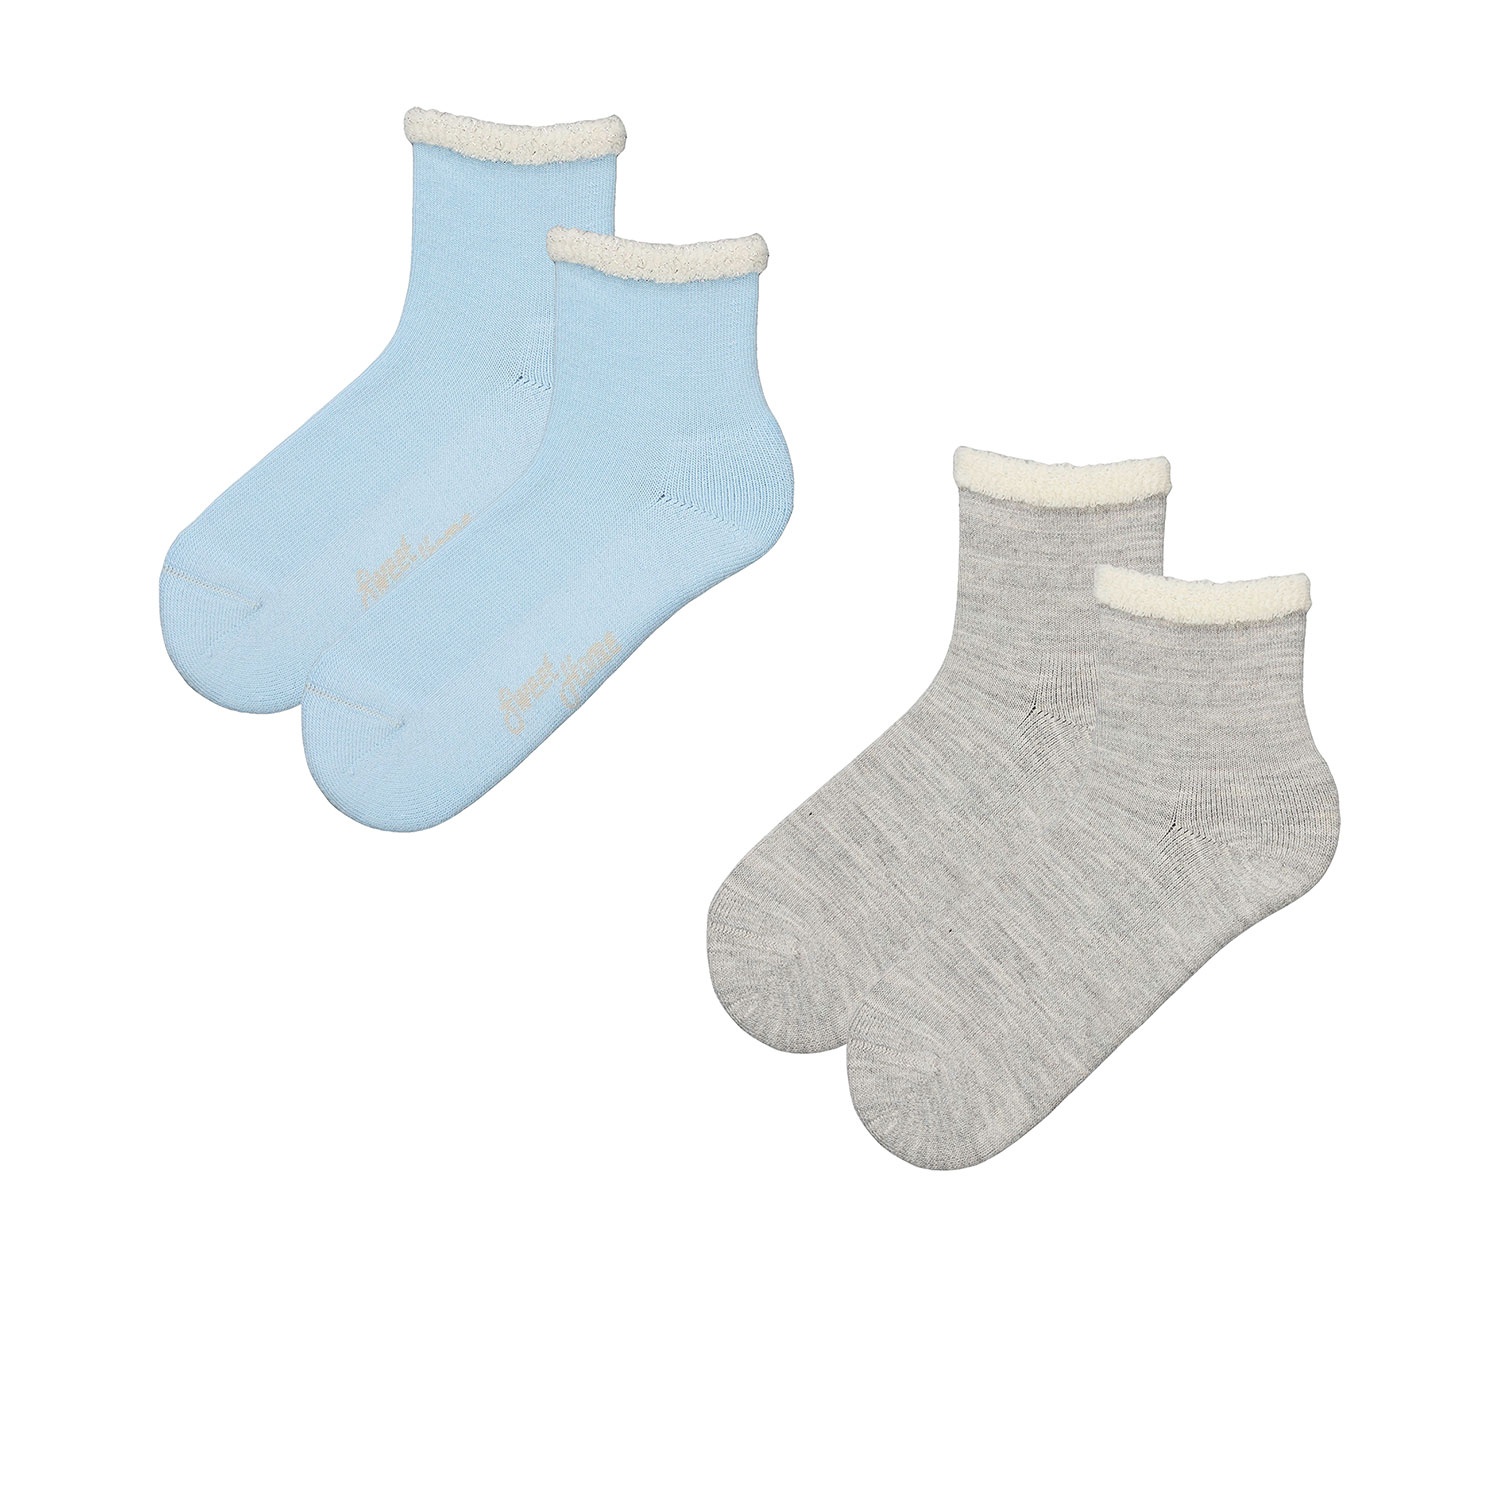 UP2FASHION Damen Flausch-Socken, 2 Paar